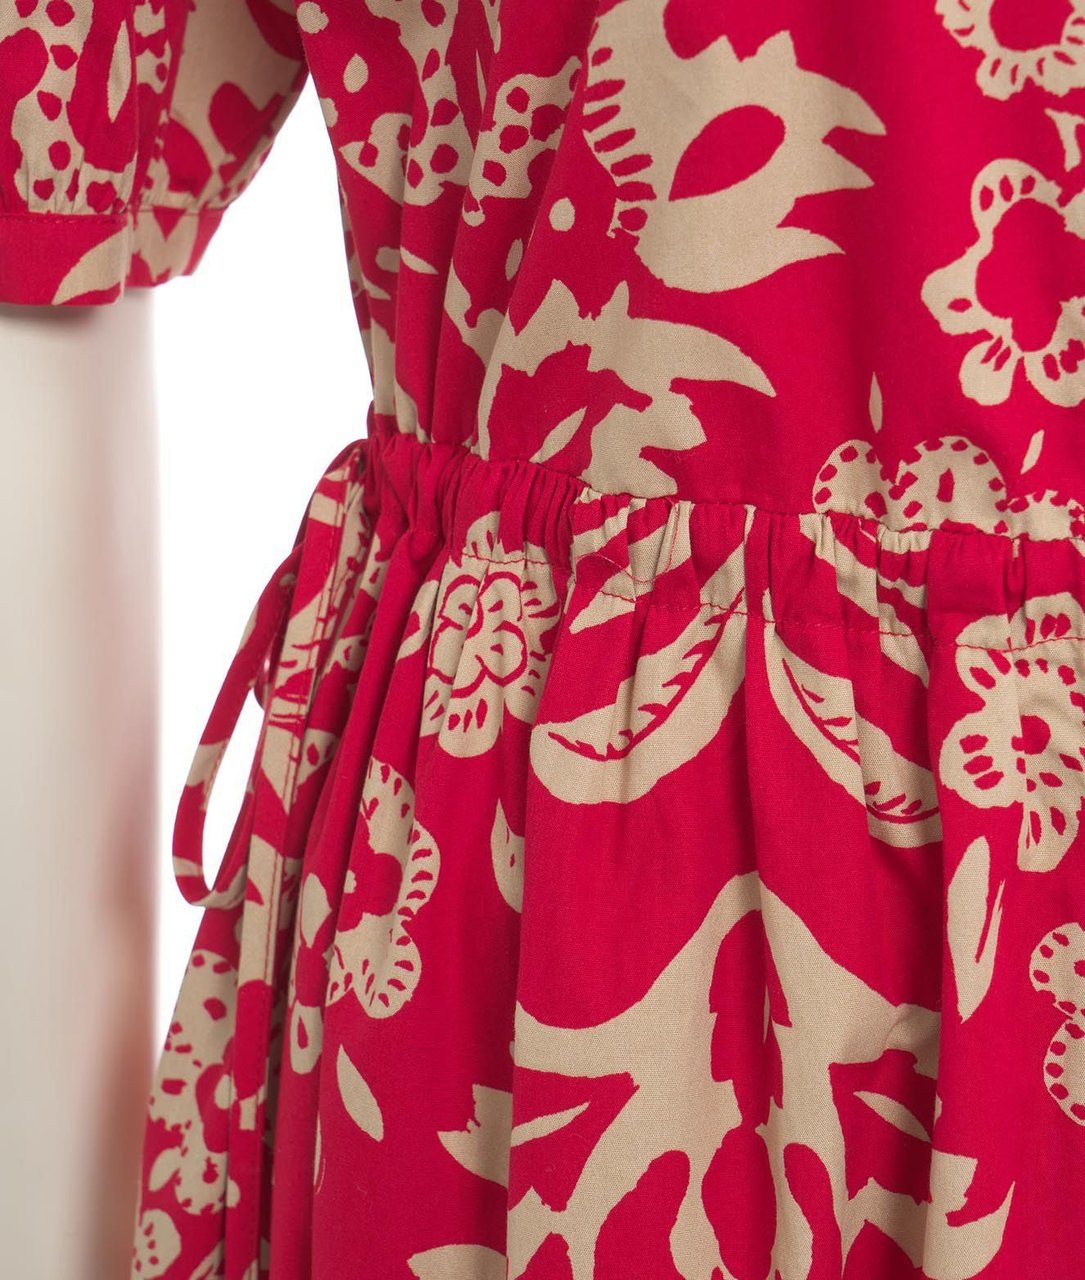 Liu Jo Maxi dress with floral print Rood